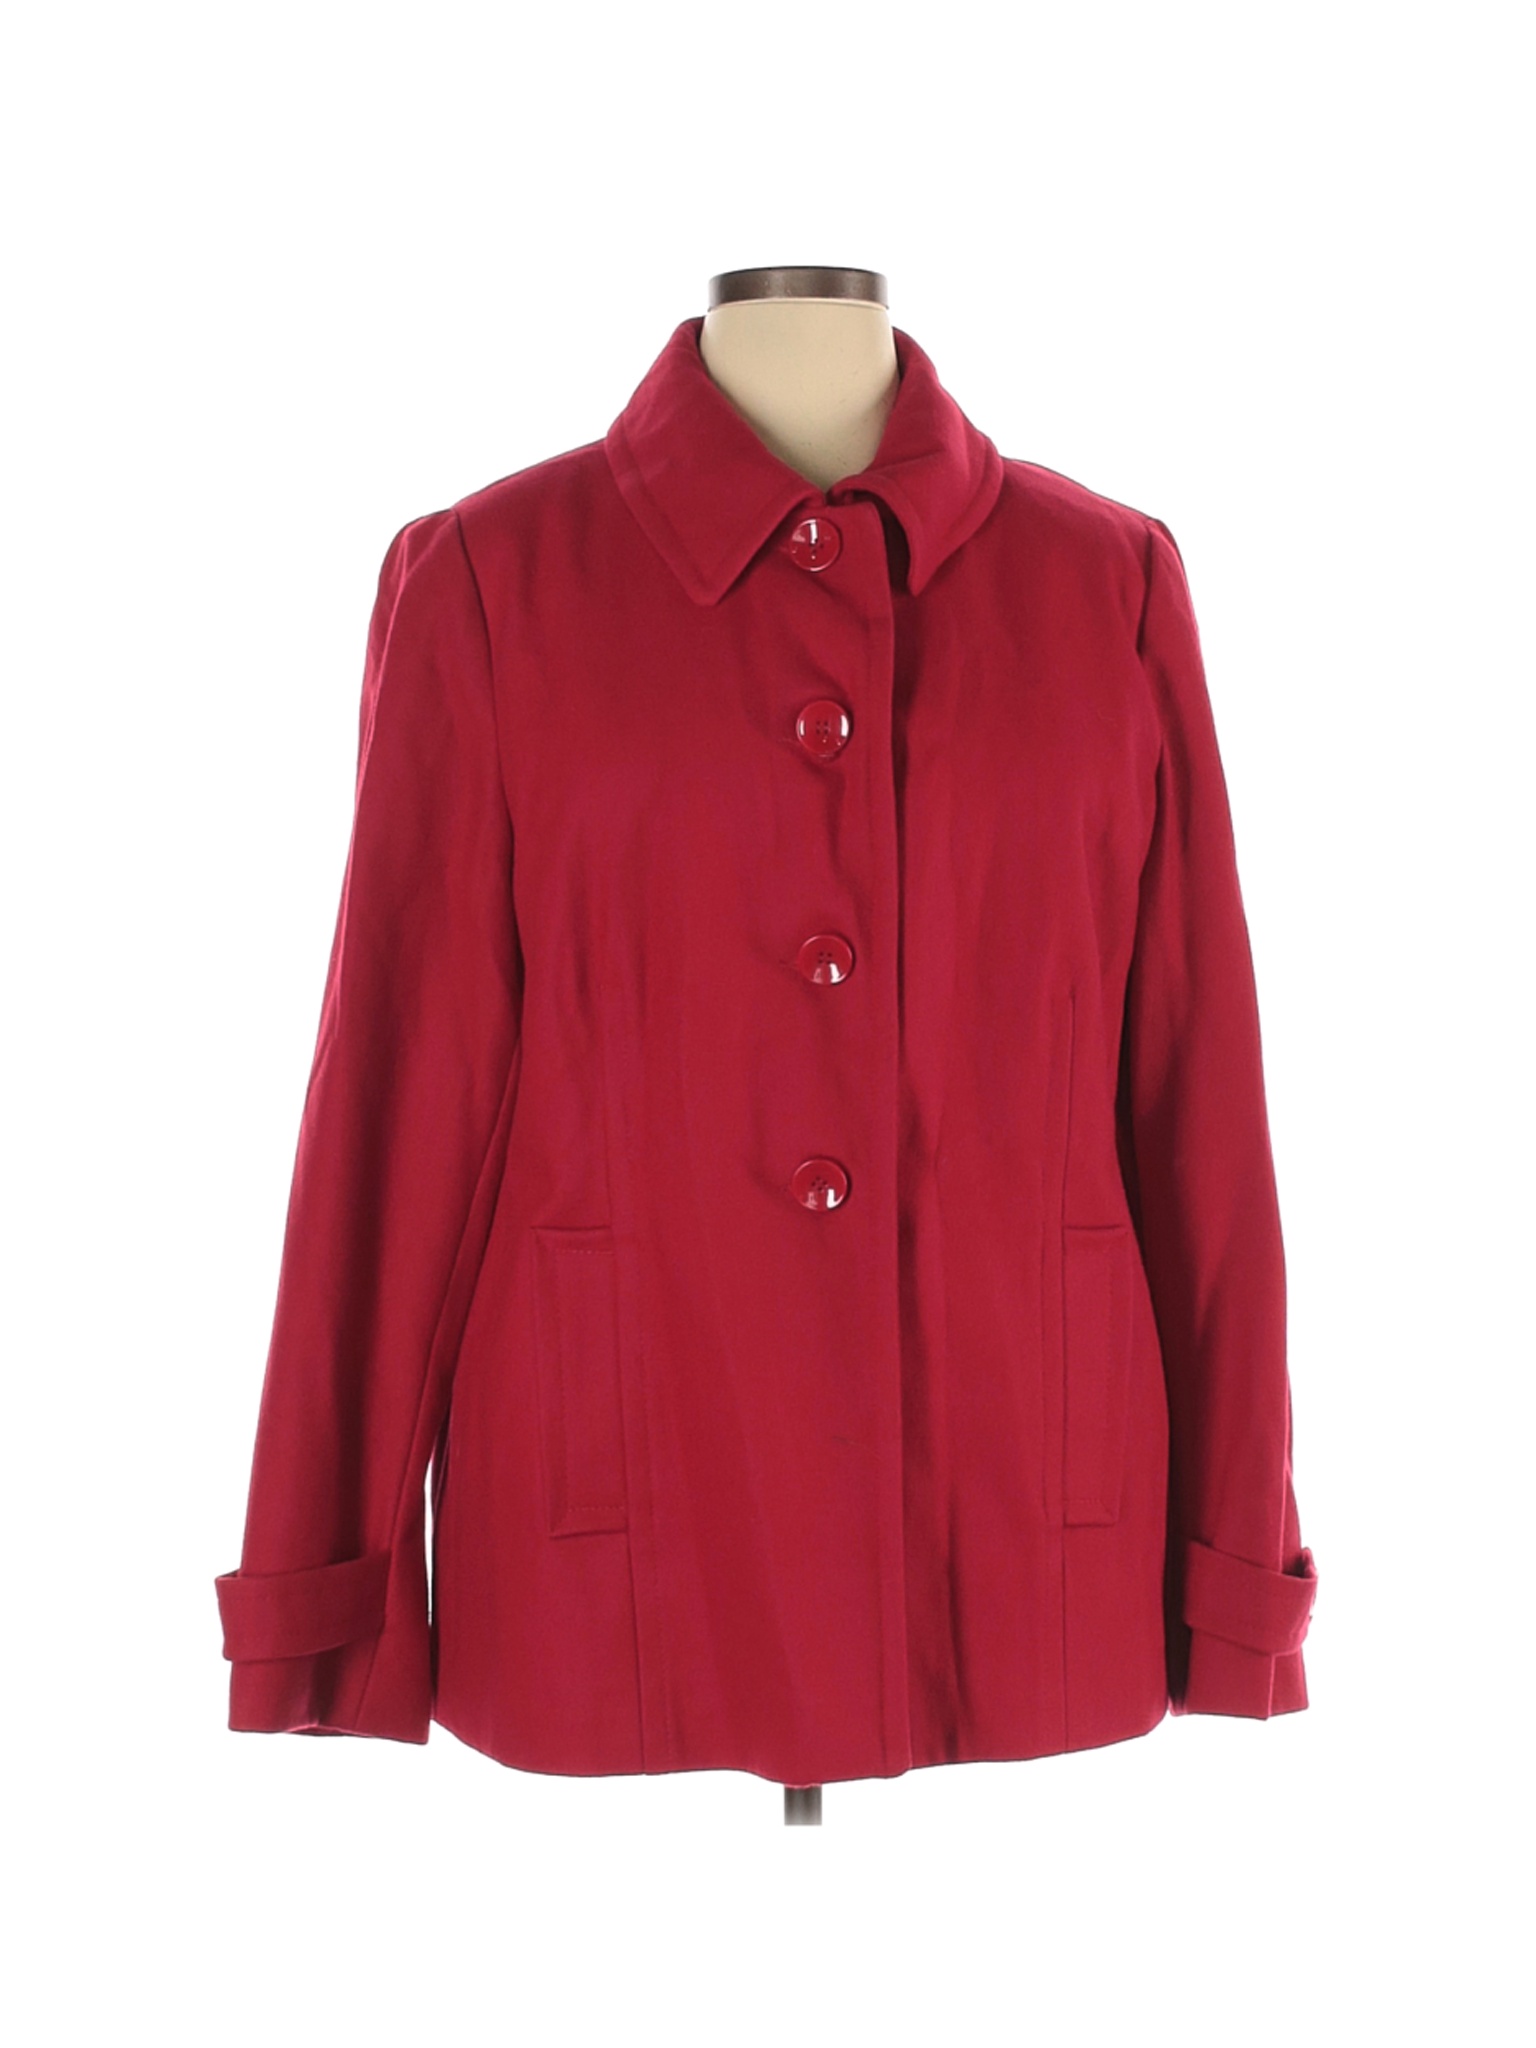 Centigrade Outerwear Women Red Wool Coat XL | eBay